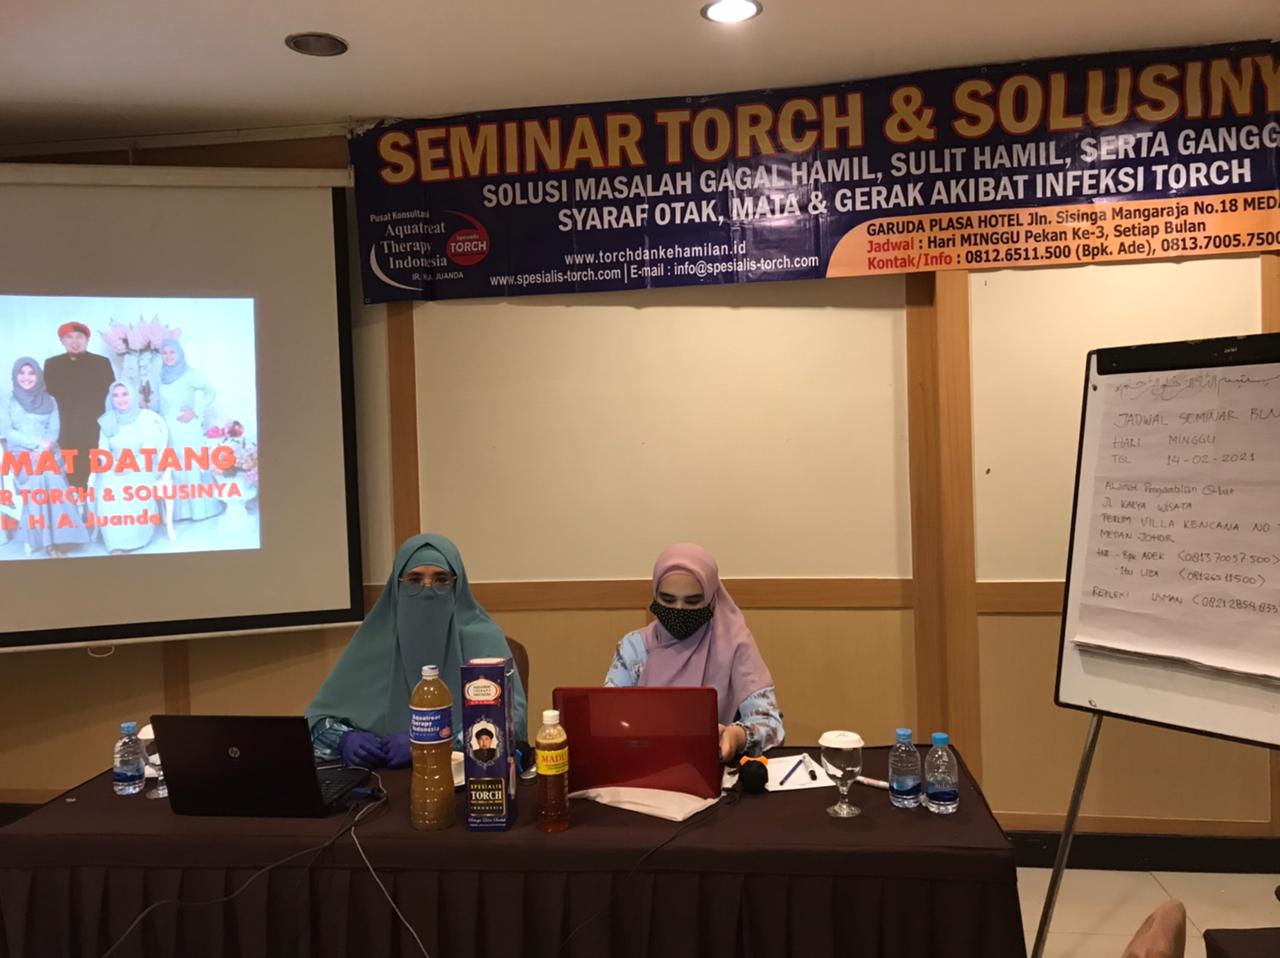 seminar torch dan solusinya di Medan 17 januari 2021 (1)